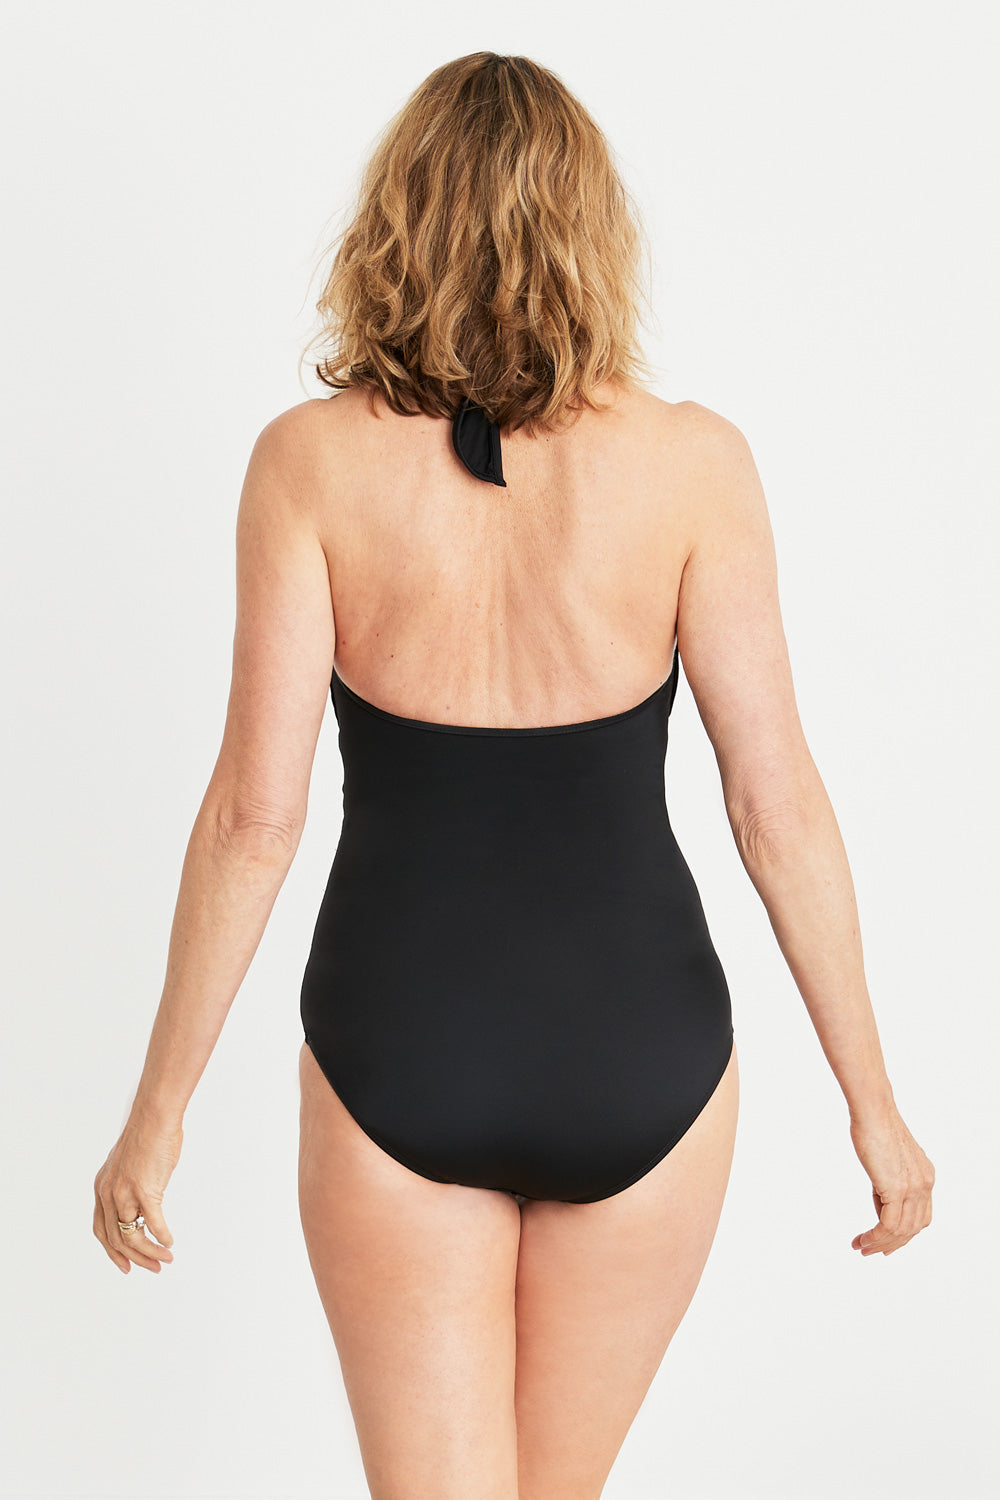 Bulk-buy One Piece Tankini Swimsuits Tummy Control Swimwear for